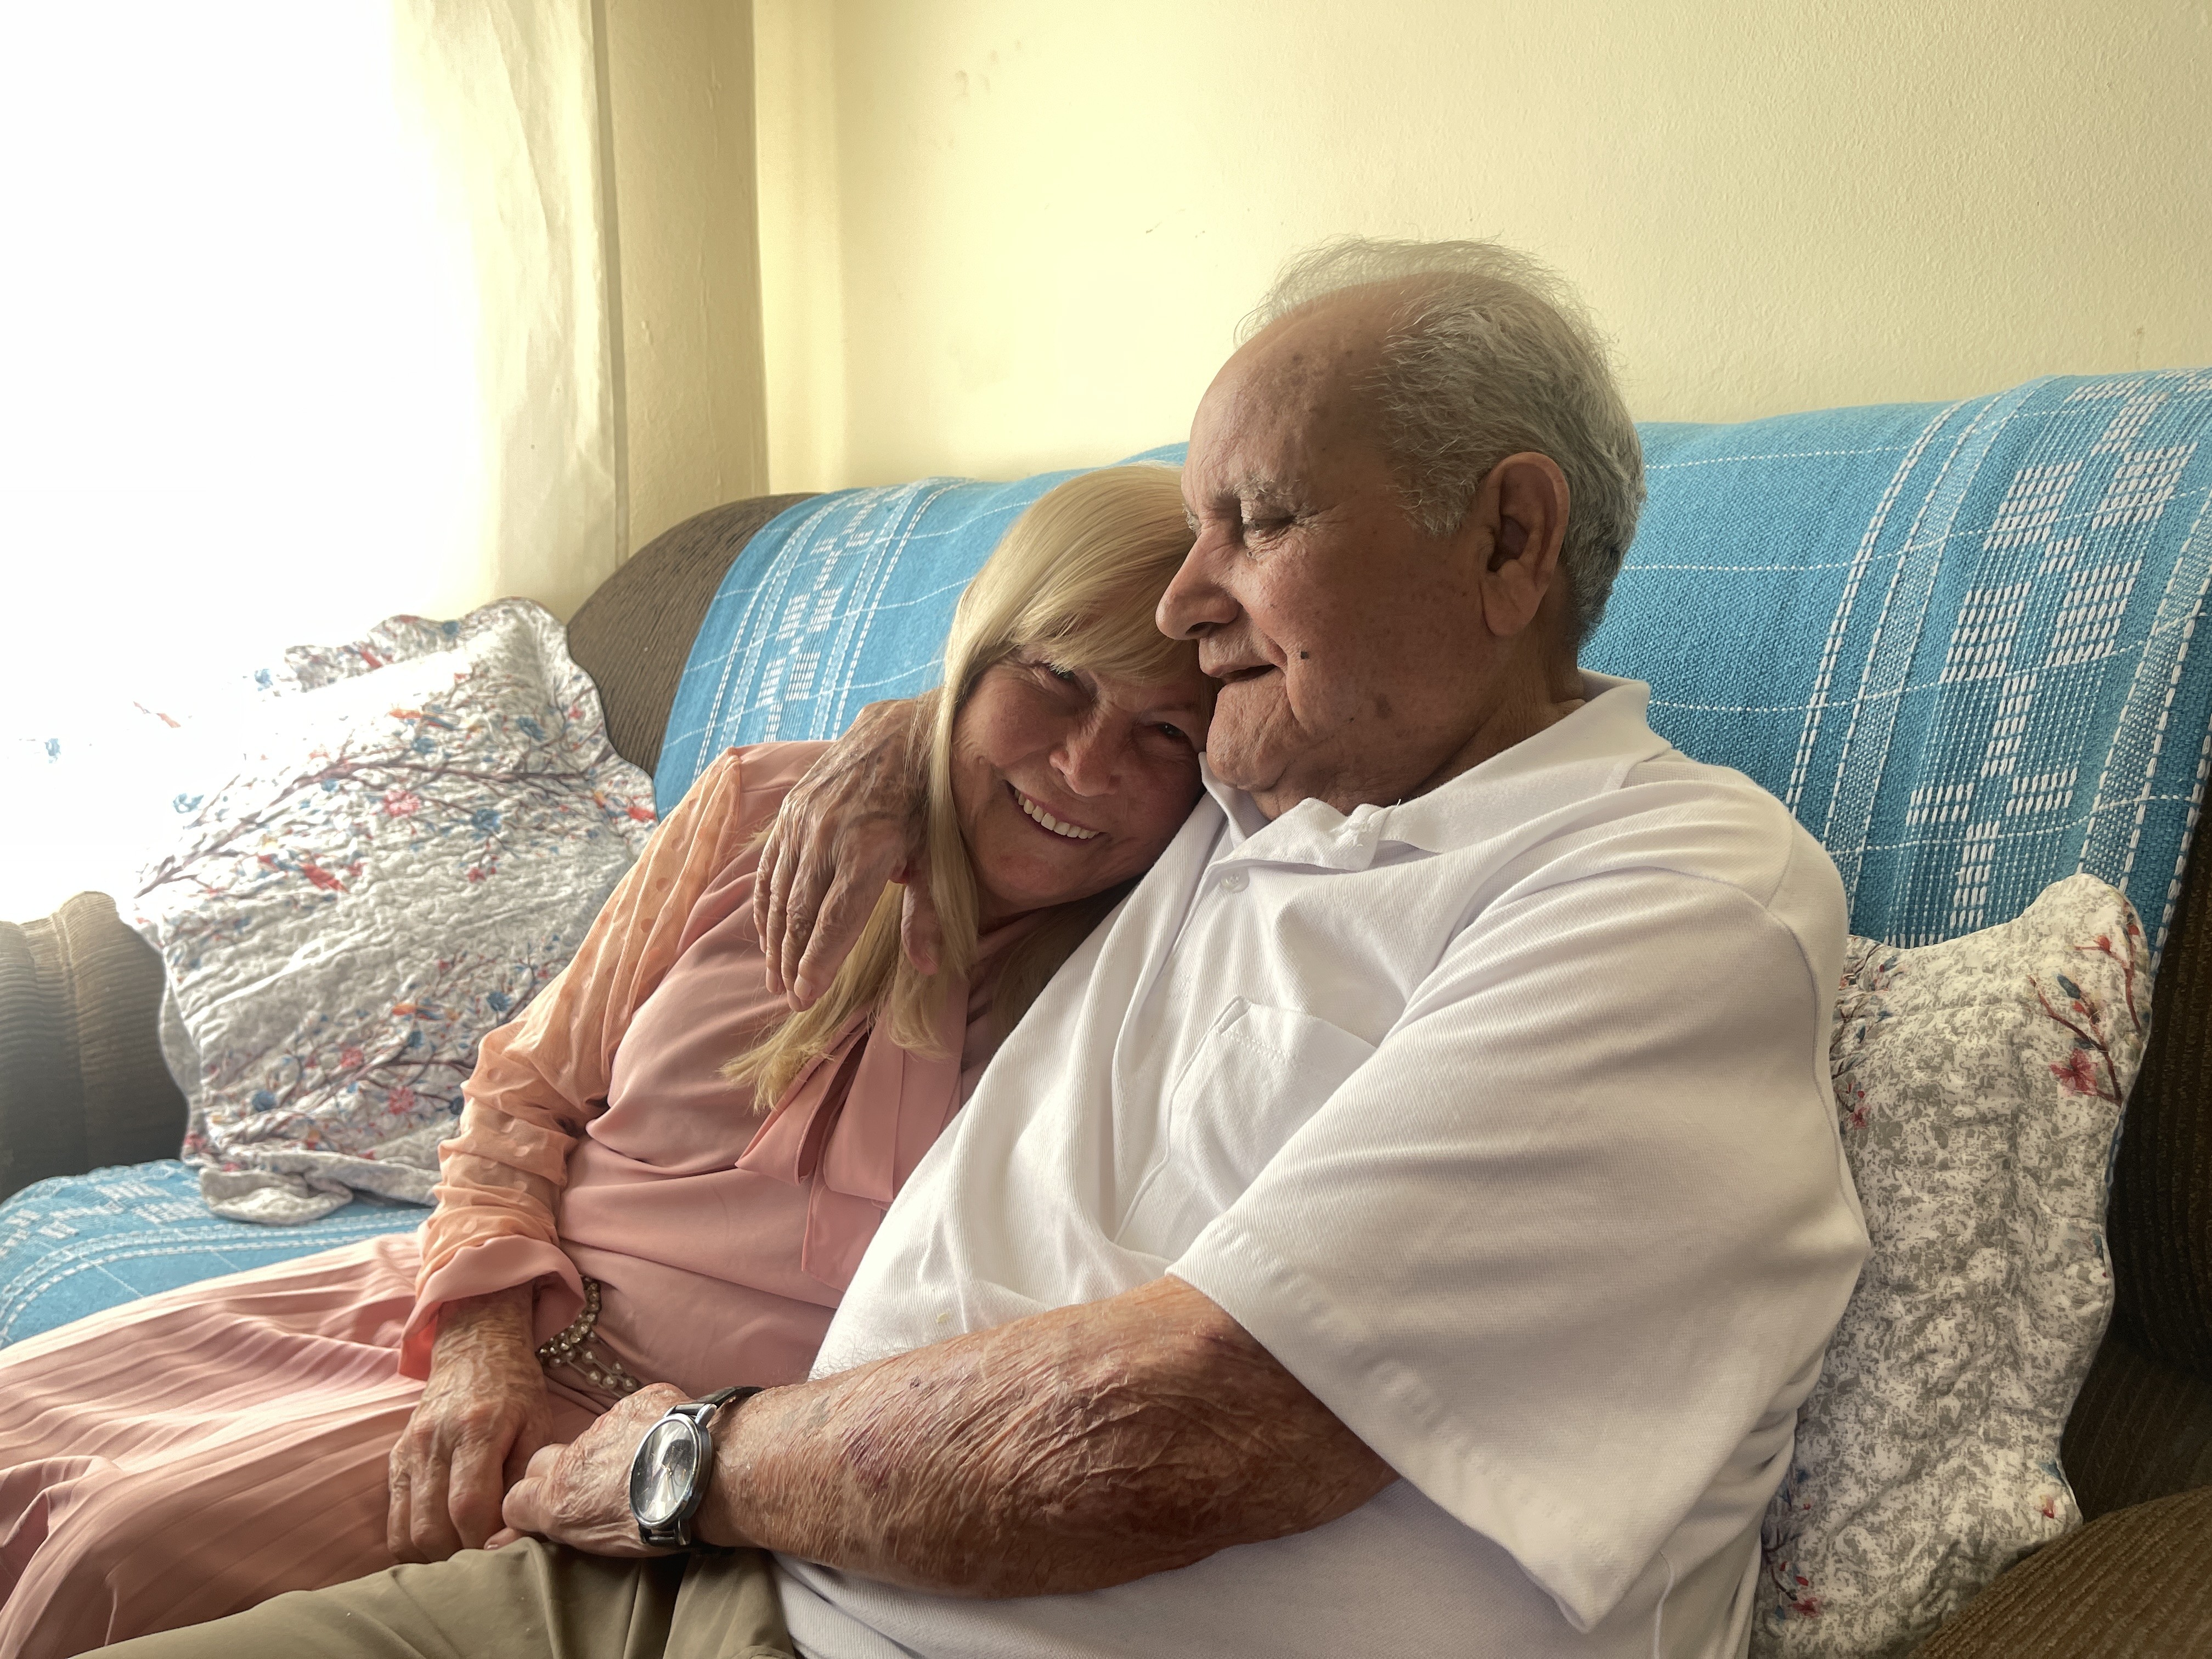 Juntos por mais de 60 anos, idosos decidem se casar na igreja em Sorocaba: ‘Mesmo amor de anos atrás’